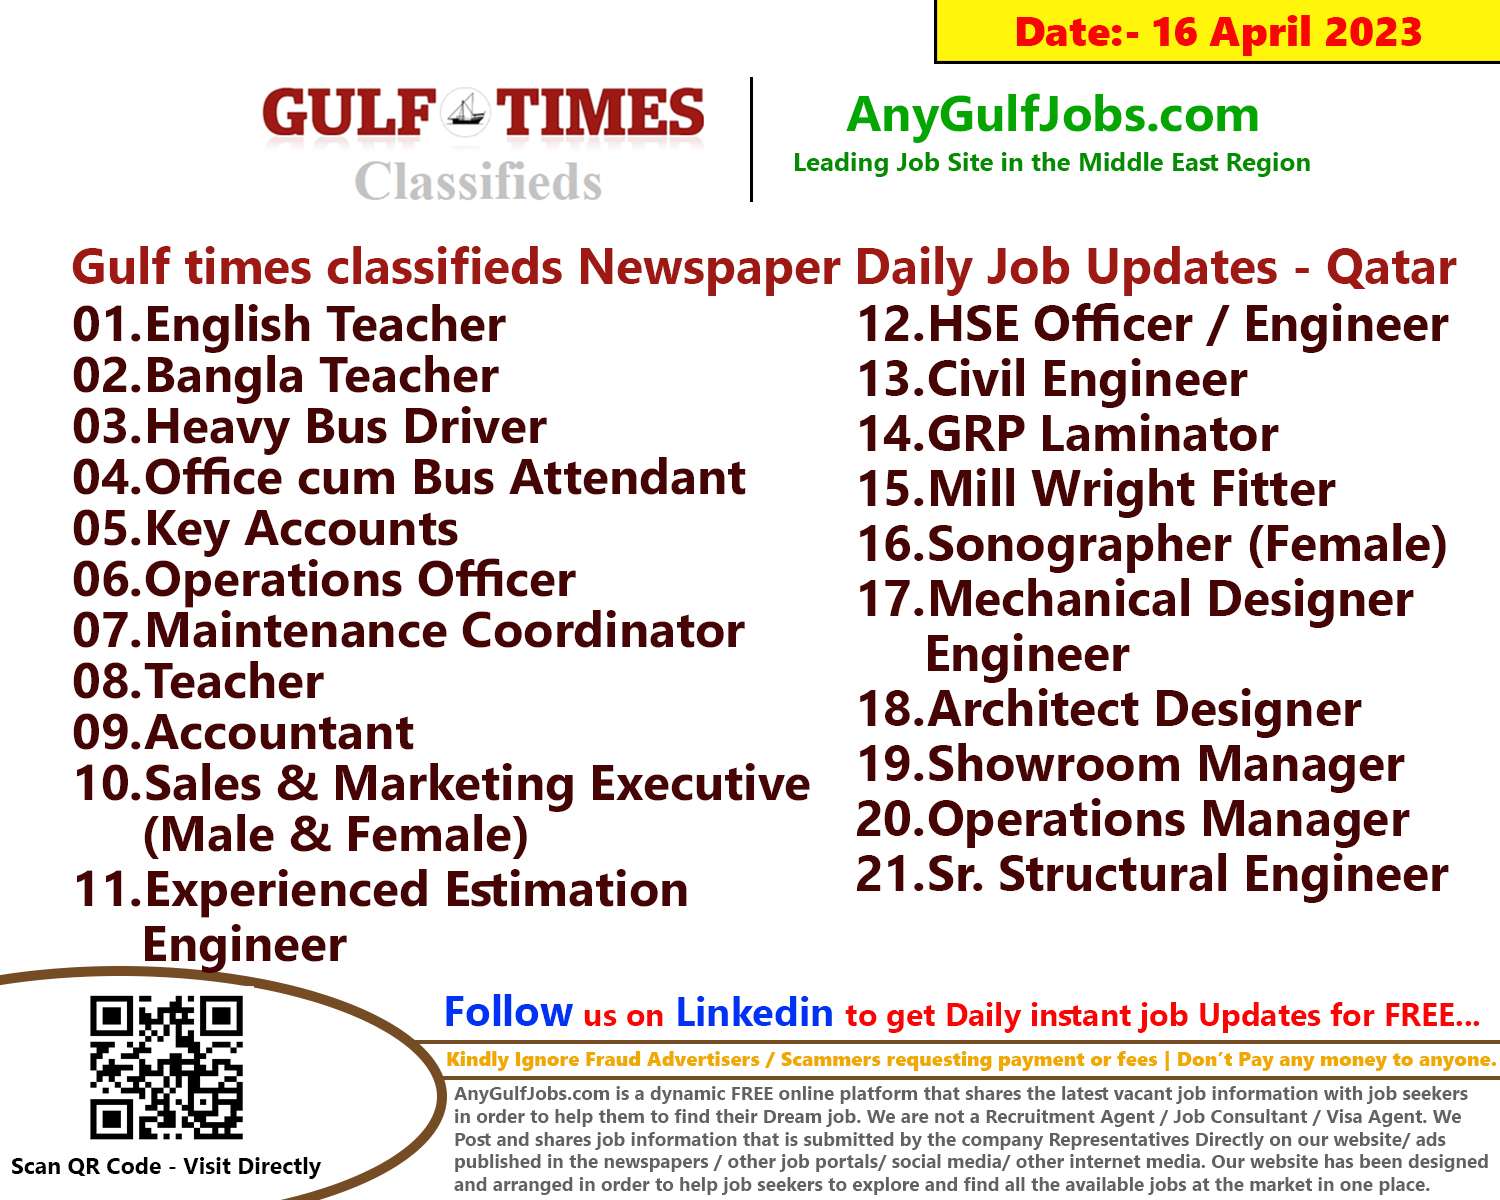 Gulf times classifieds Job Vacancies Qatar - 16 April 2023